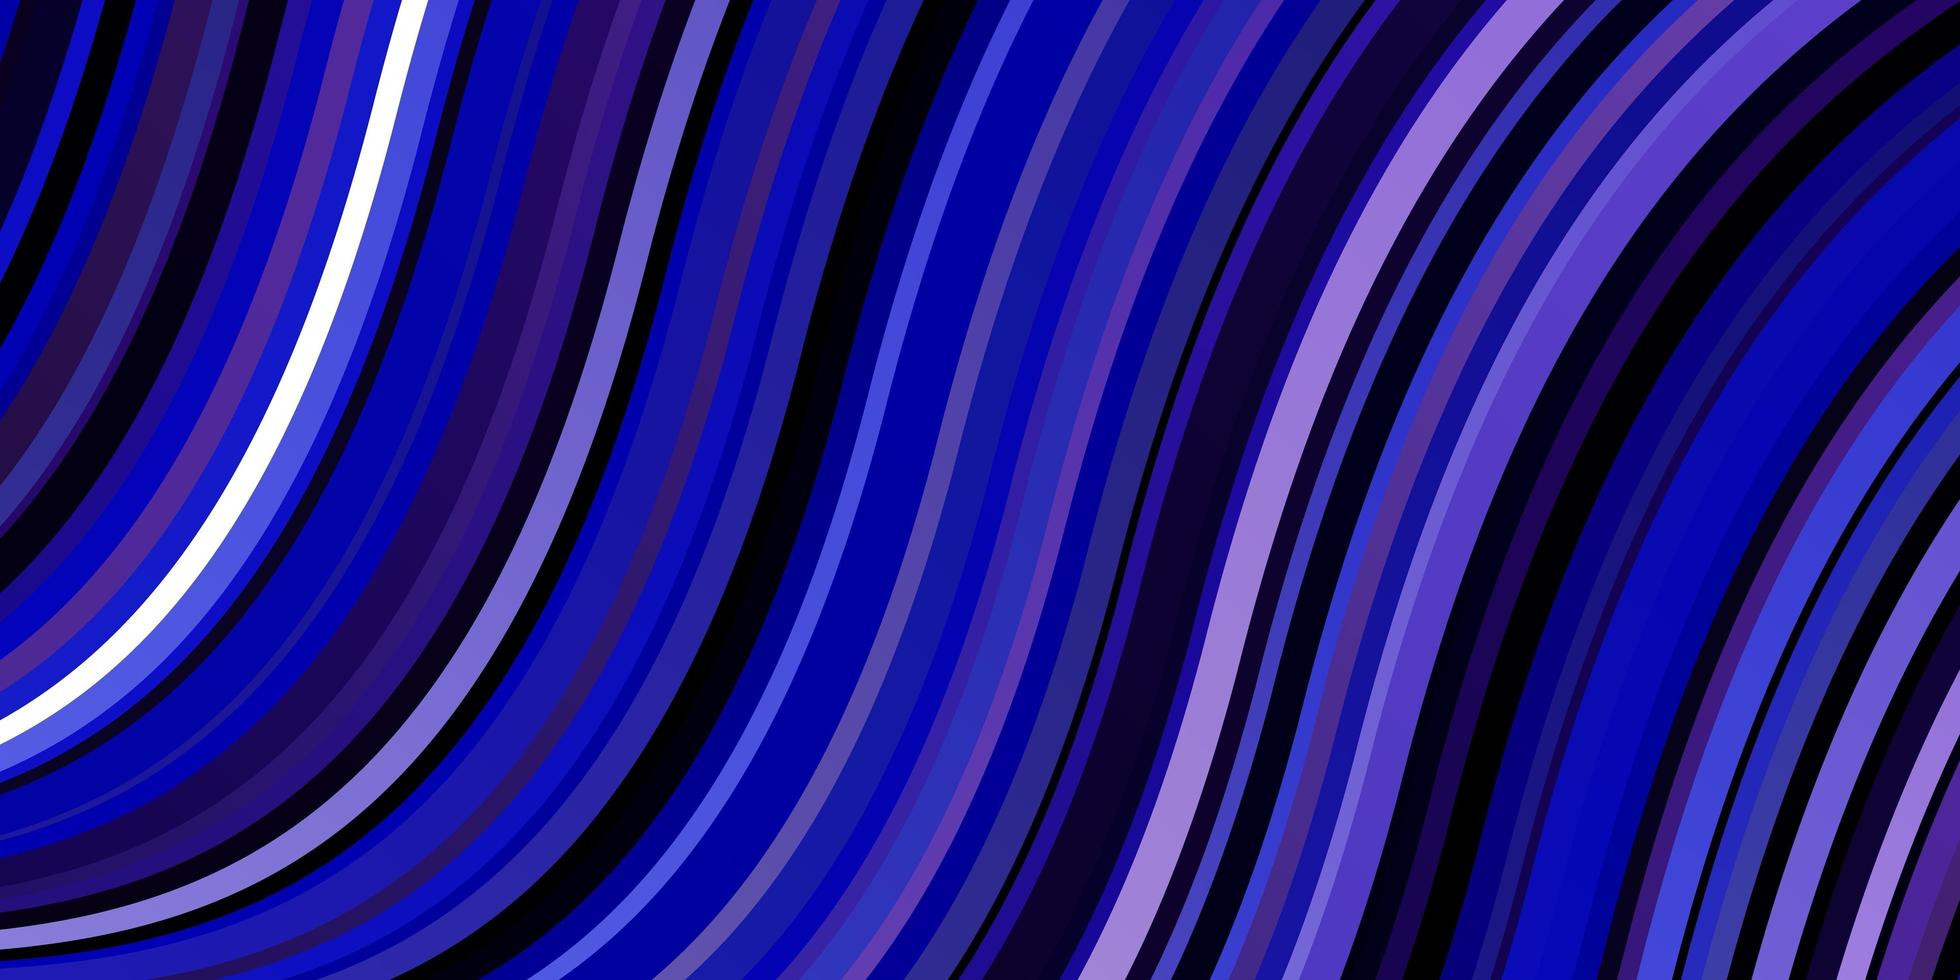 ljusrosa, blå vektor bakgrund med kurvor. illustration i halvtonstil med lutningskurvor. mall för din ui-design.